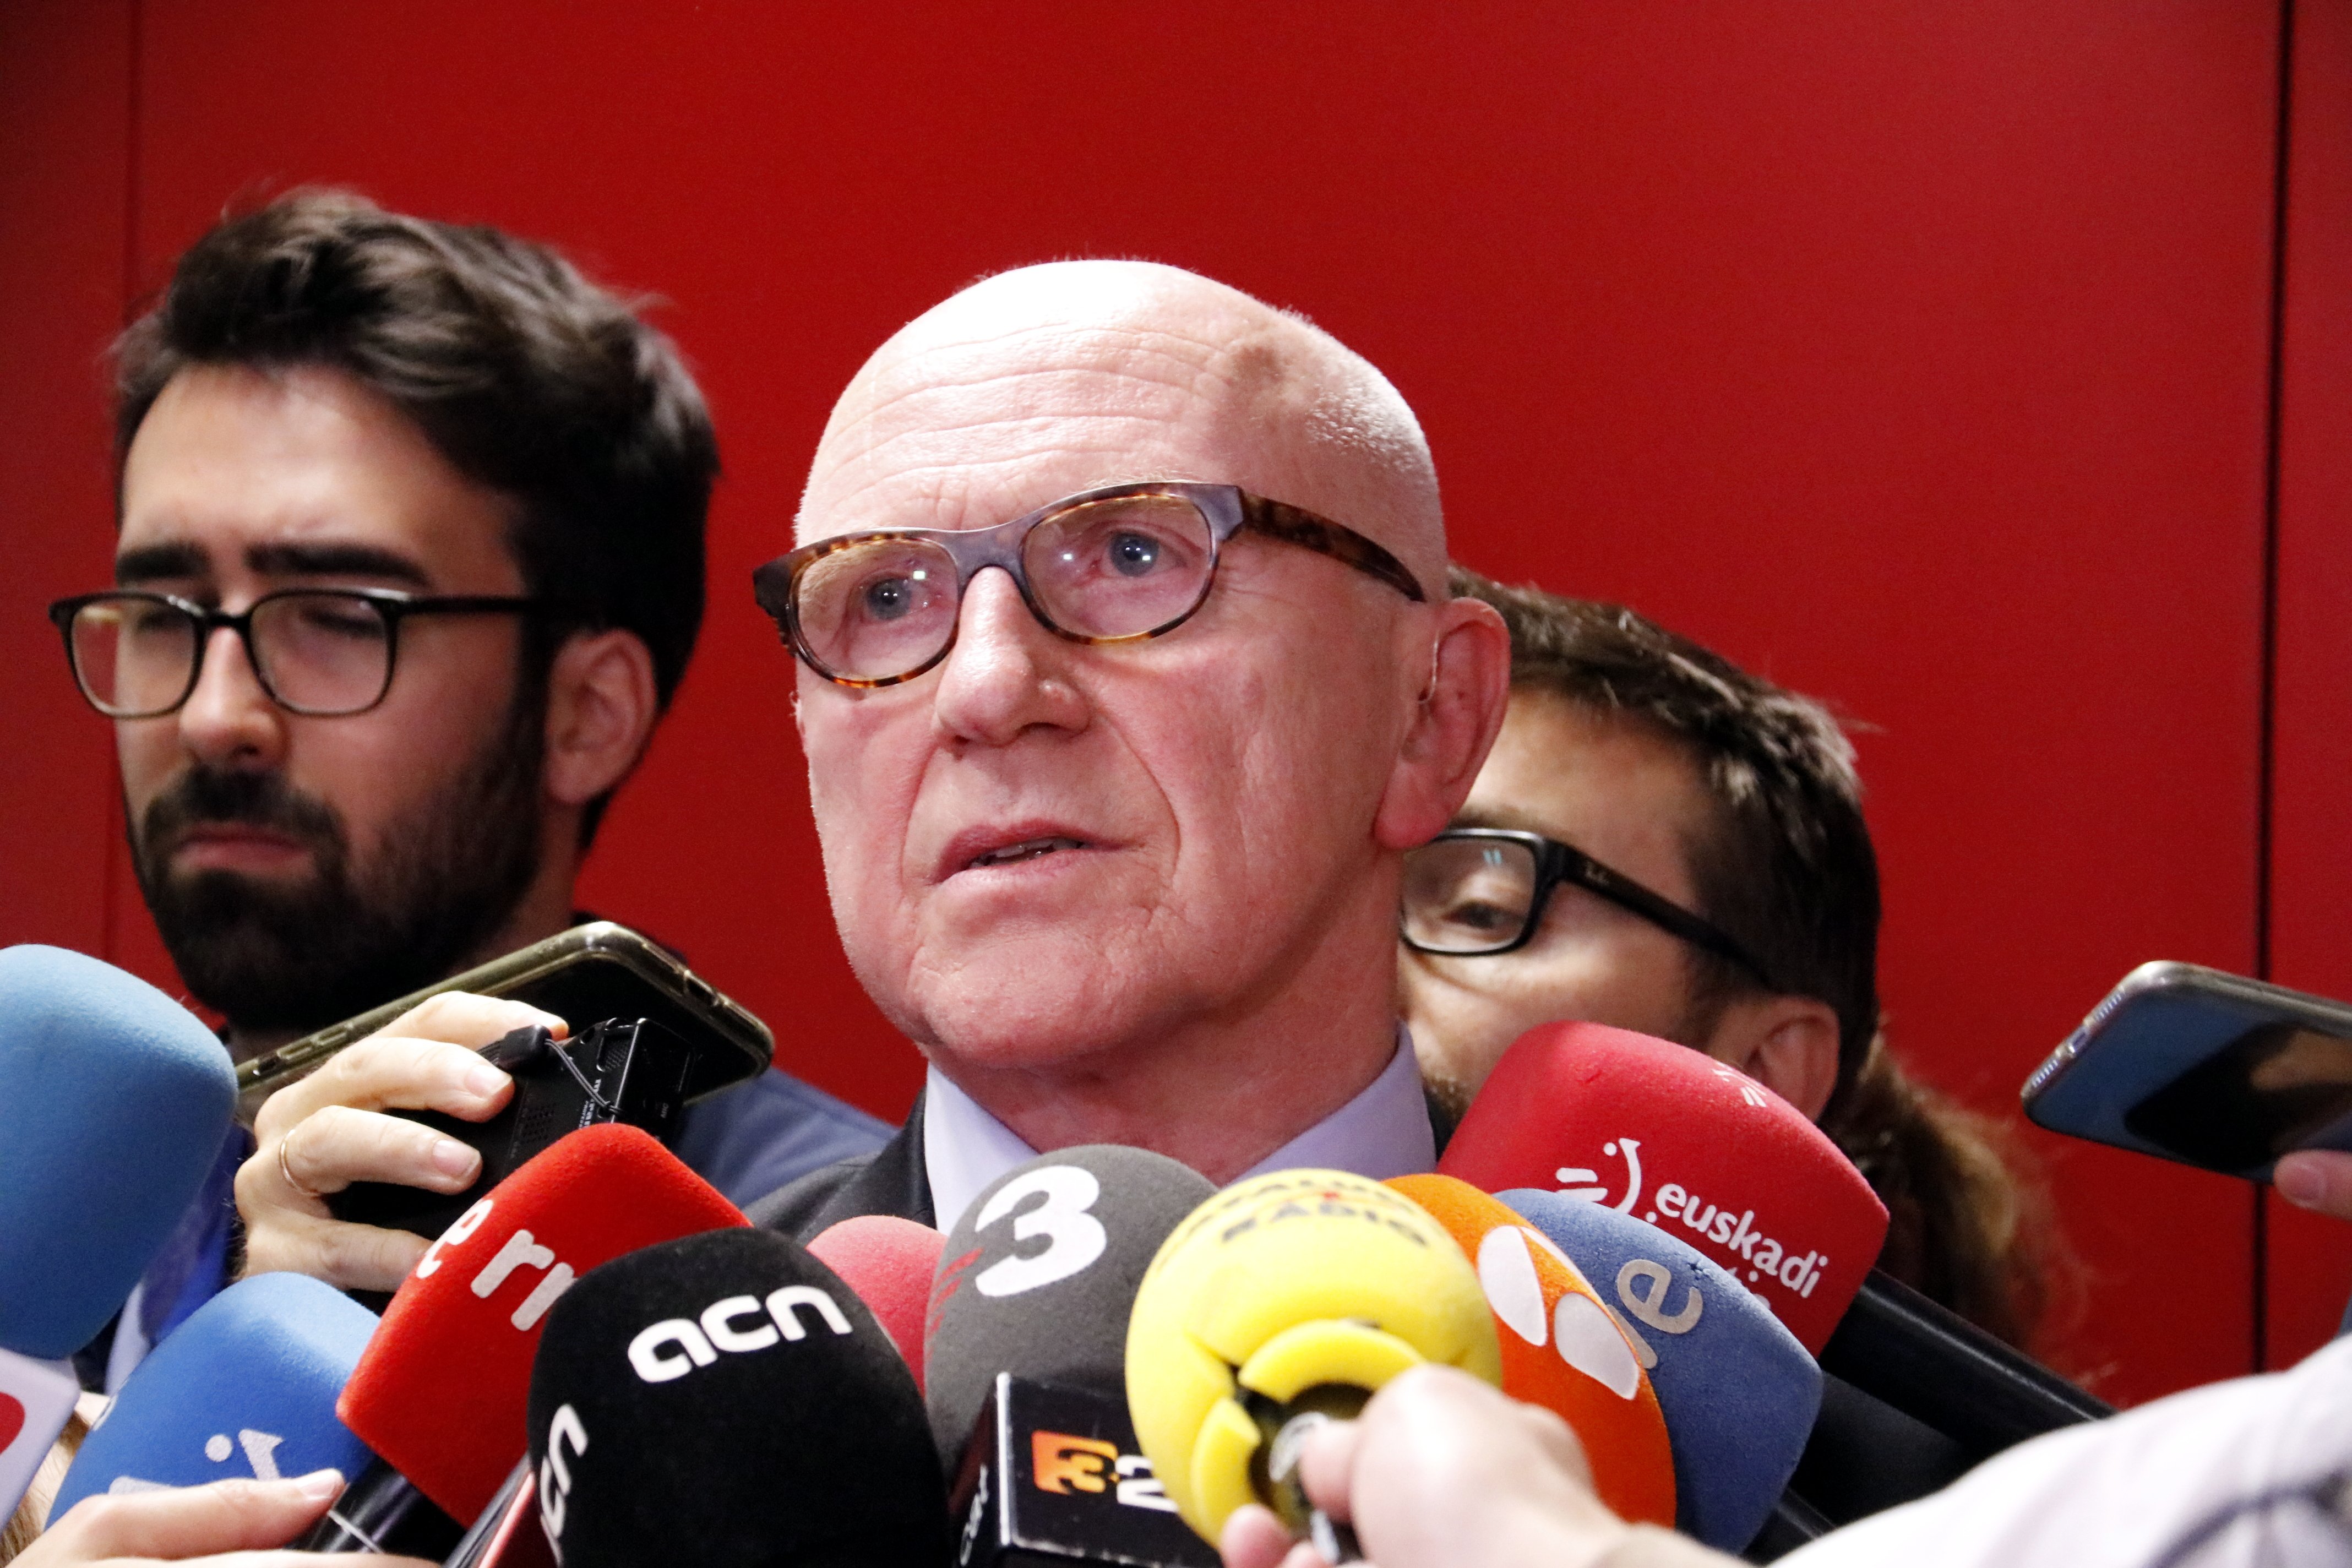 L’advocat flamenc de Puigdemont encara no ha rebut cap notificació de la fiscalia belga